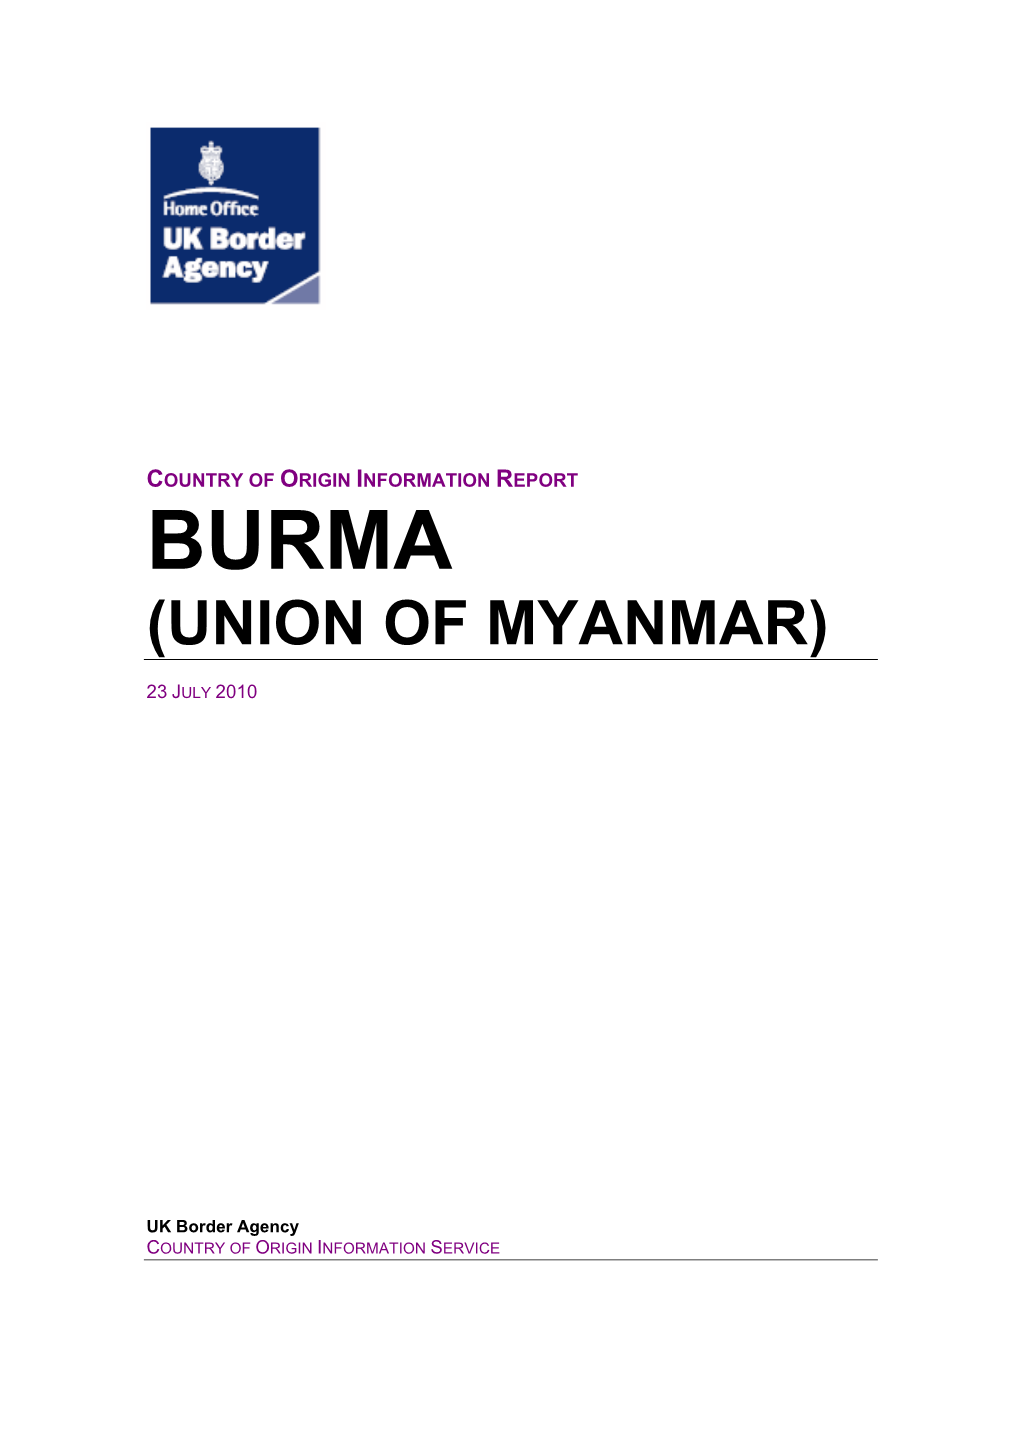 Union of Myanmar)